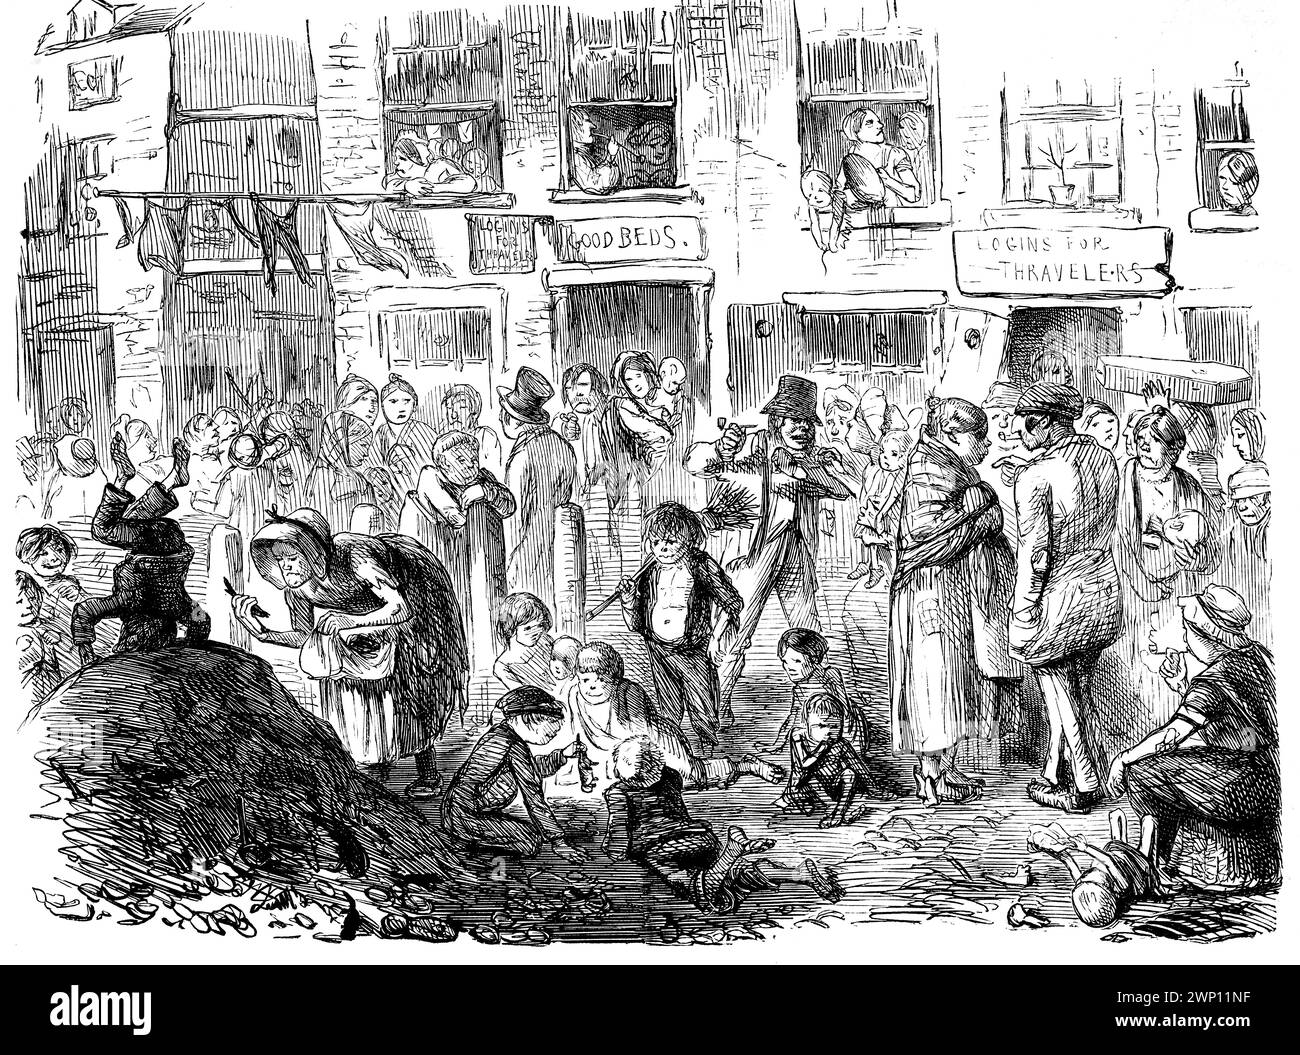 A court for King cholera, caricature d'une scène de rue urbaine surpeuplée et insalubre, de 1852 Punch Magazine Banque D'Images